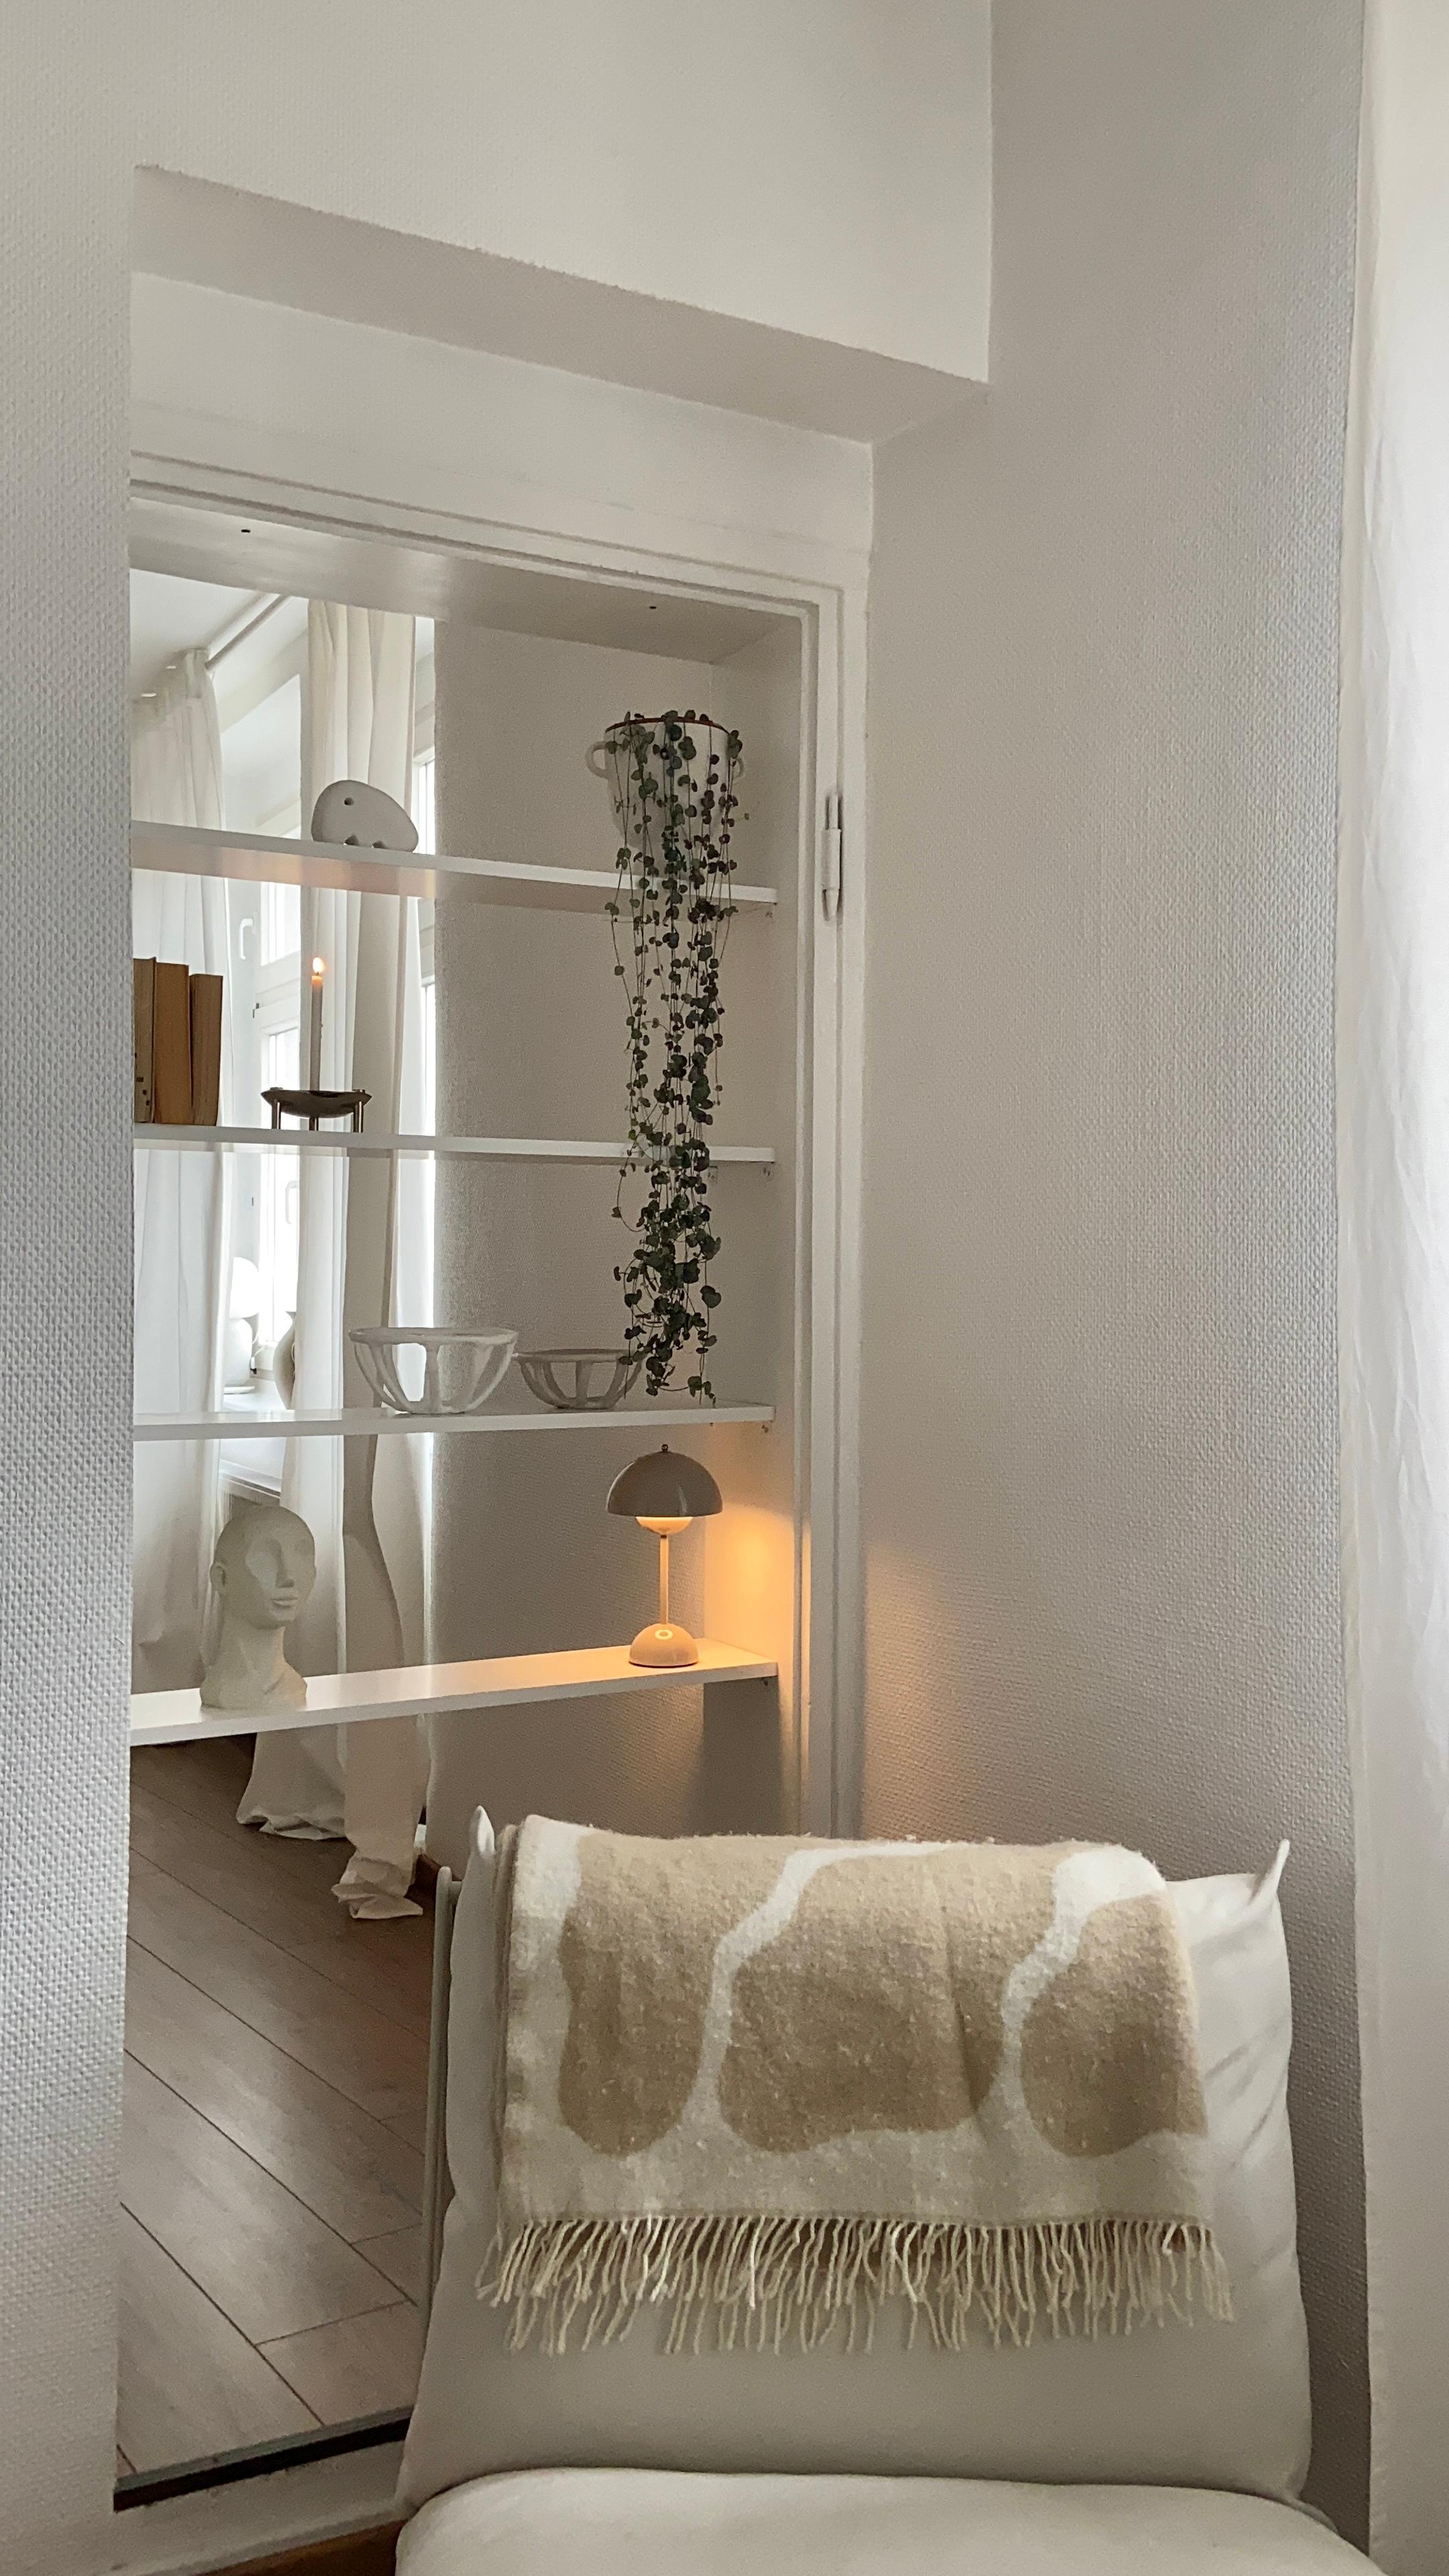 #shelfie #regaldeko #dekoidee #flowerpot #andtradition #cozy #wohnzimmer #white #beige